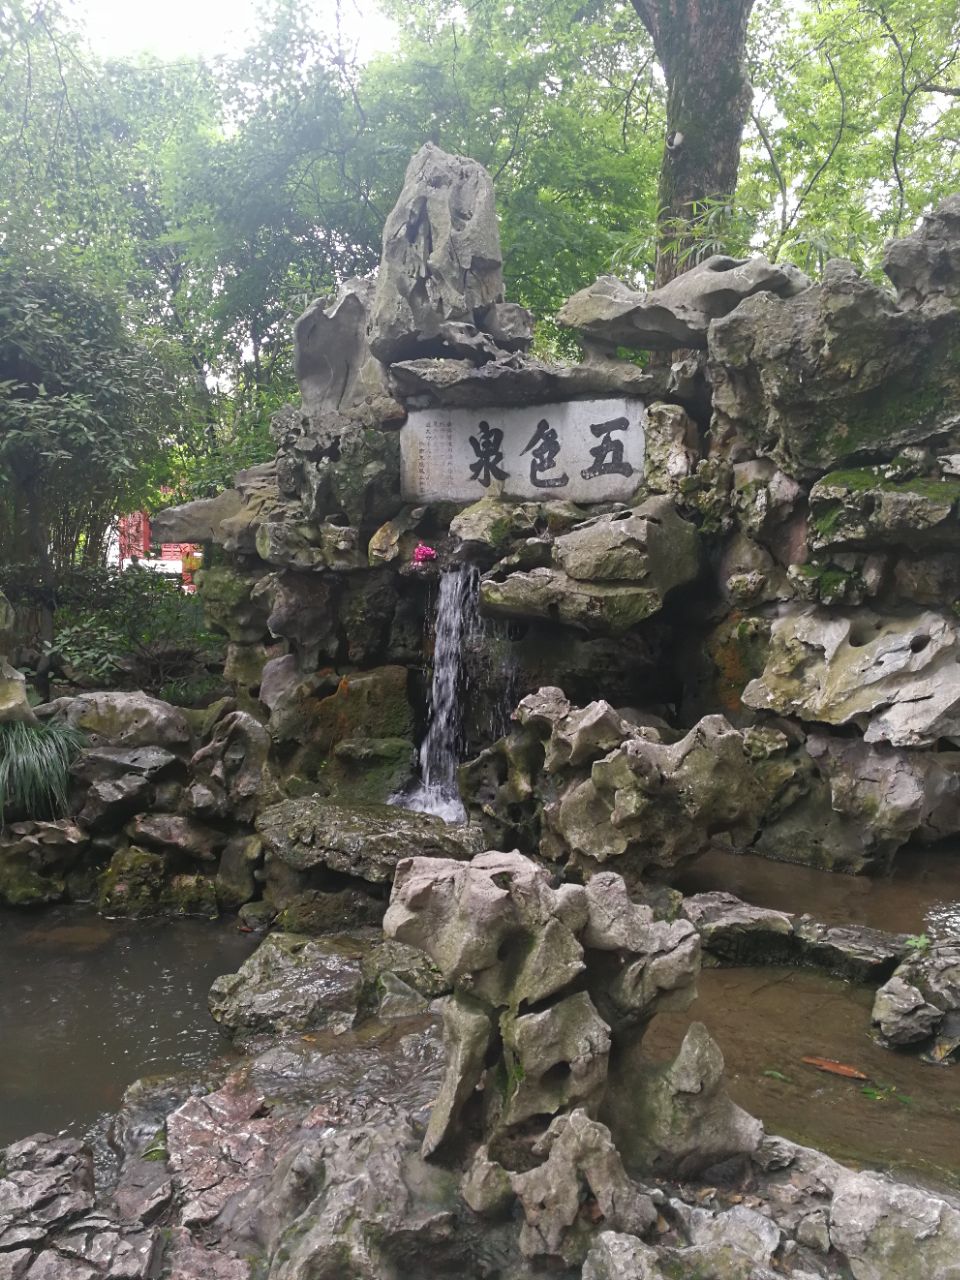 【携程攻略】松江区醉白池景点,松江醉白池是江南著名的古典园林之一